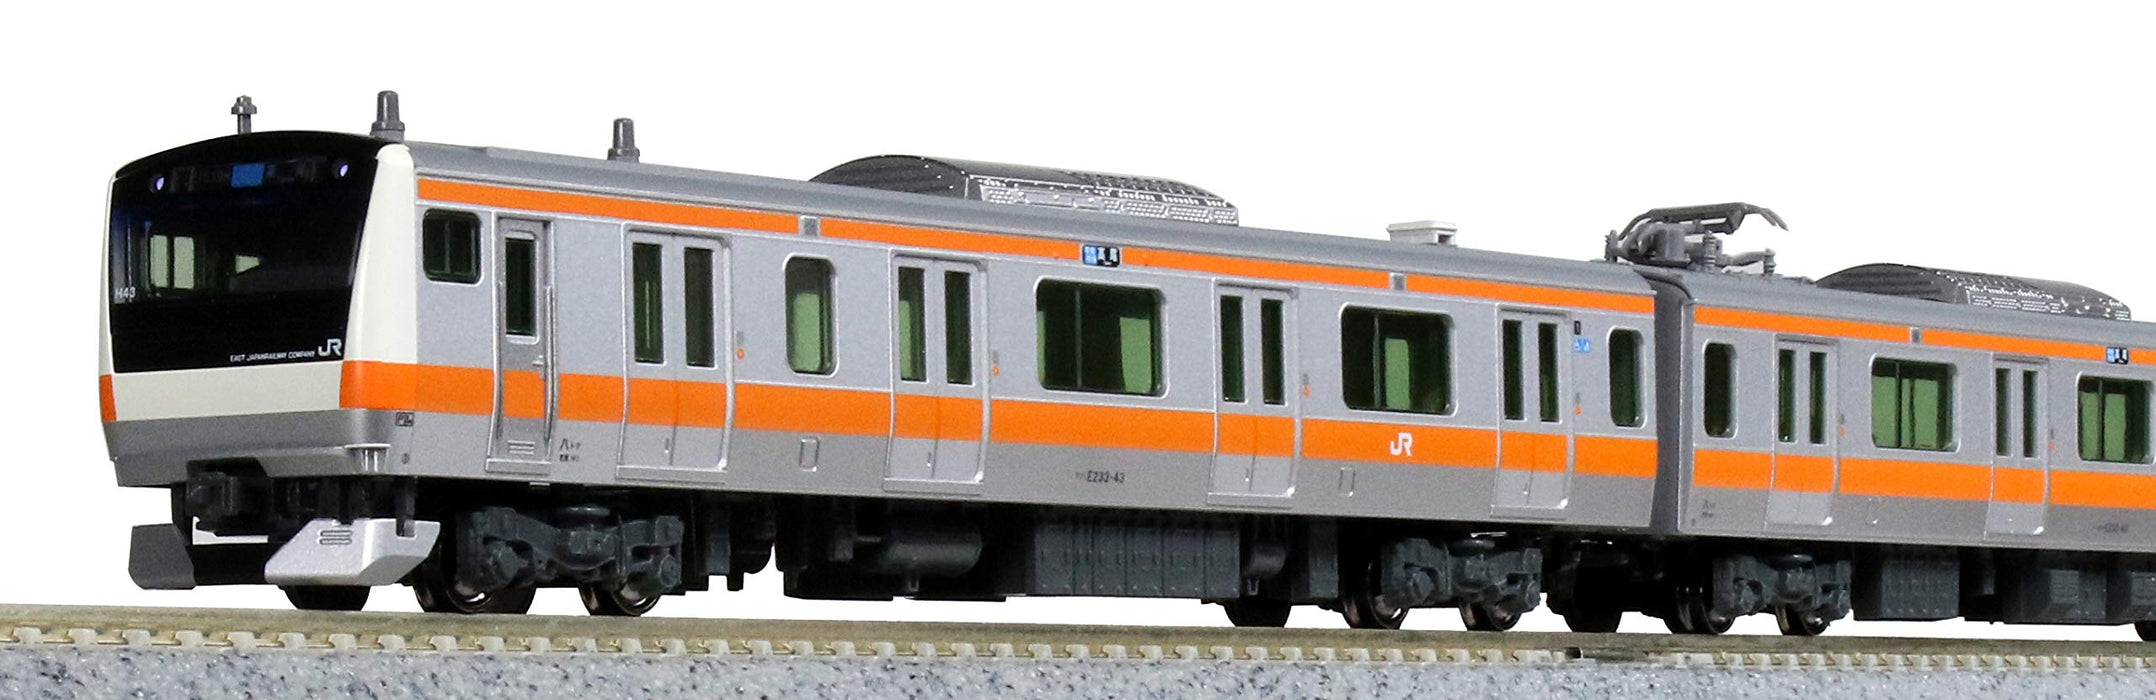 Kato Spur N 4-Wagen-Ergänzungsset 10-1622 E233 Serie Chuo Line Eisenbahn-Modellzug